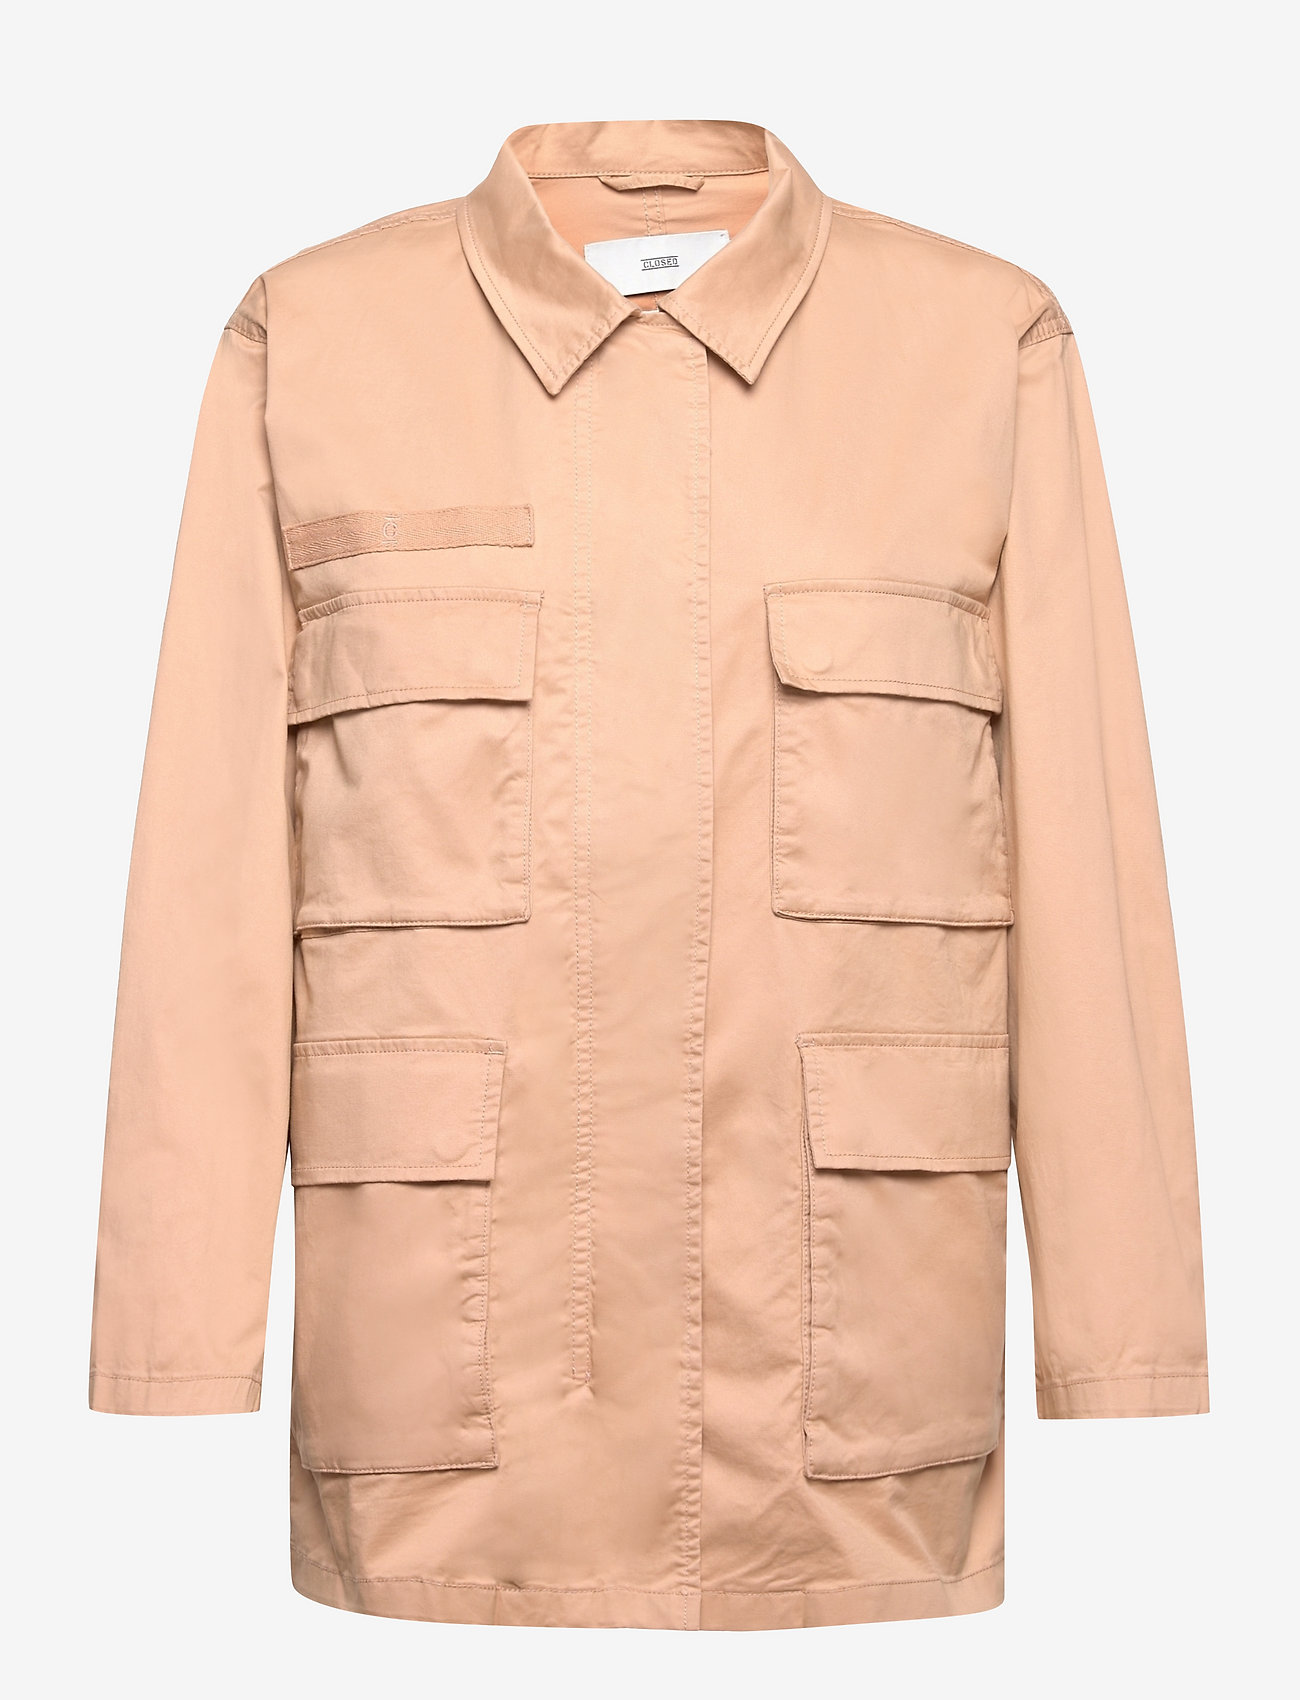 Closed - womens jacket - manteaux legères - sandstone - 1